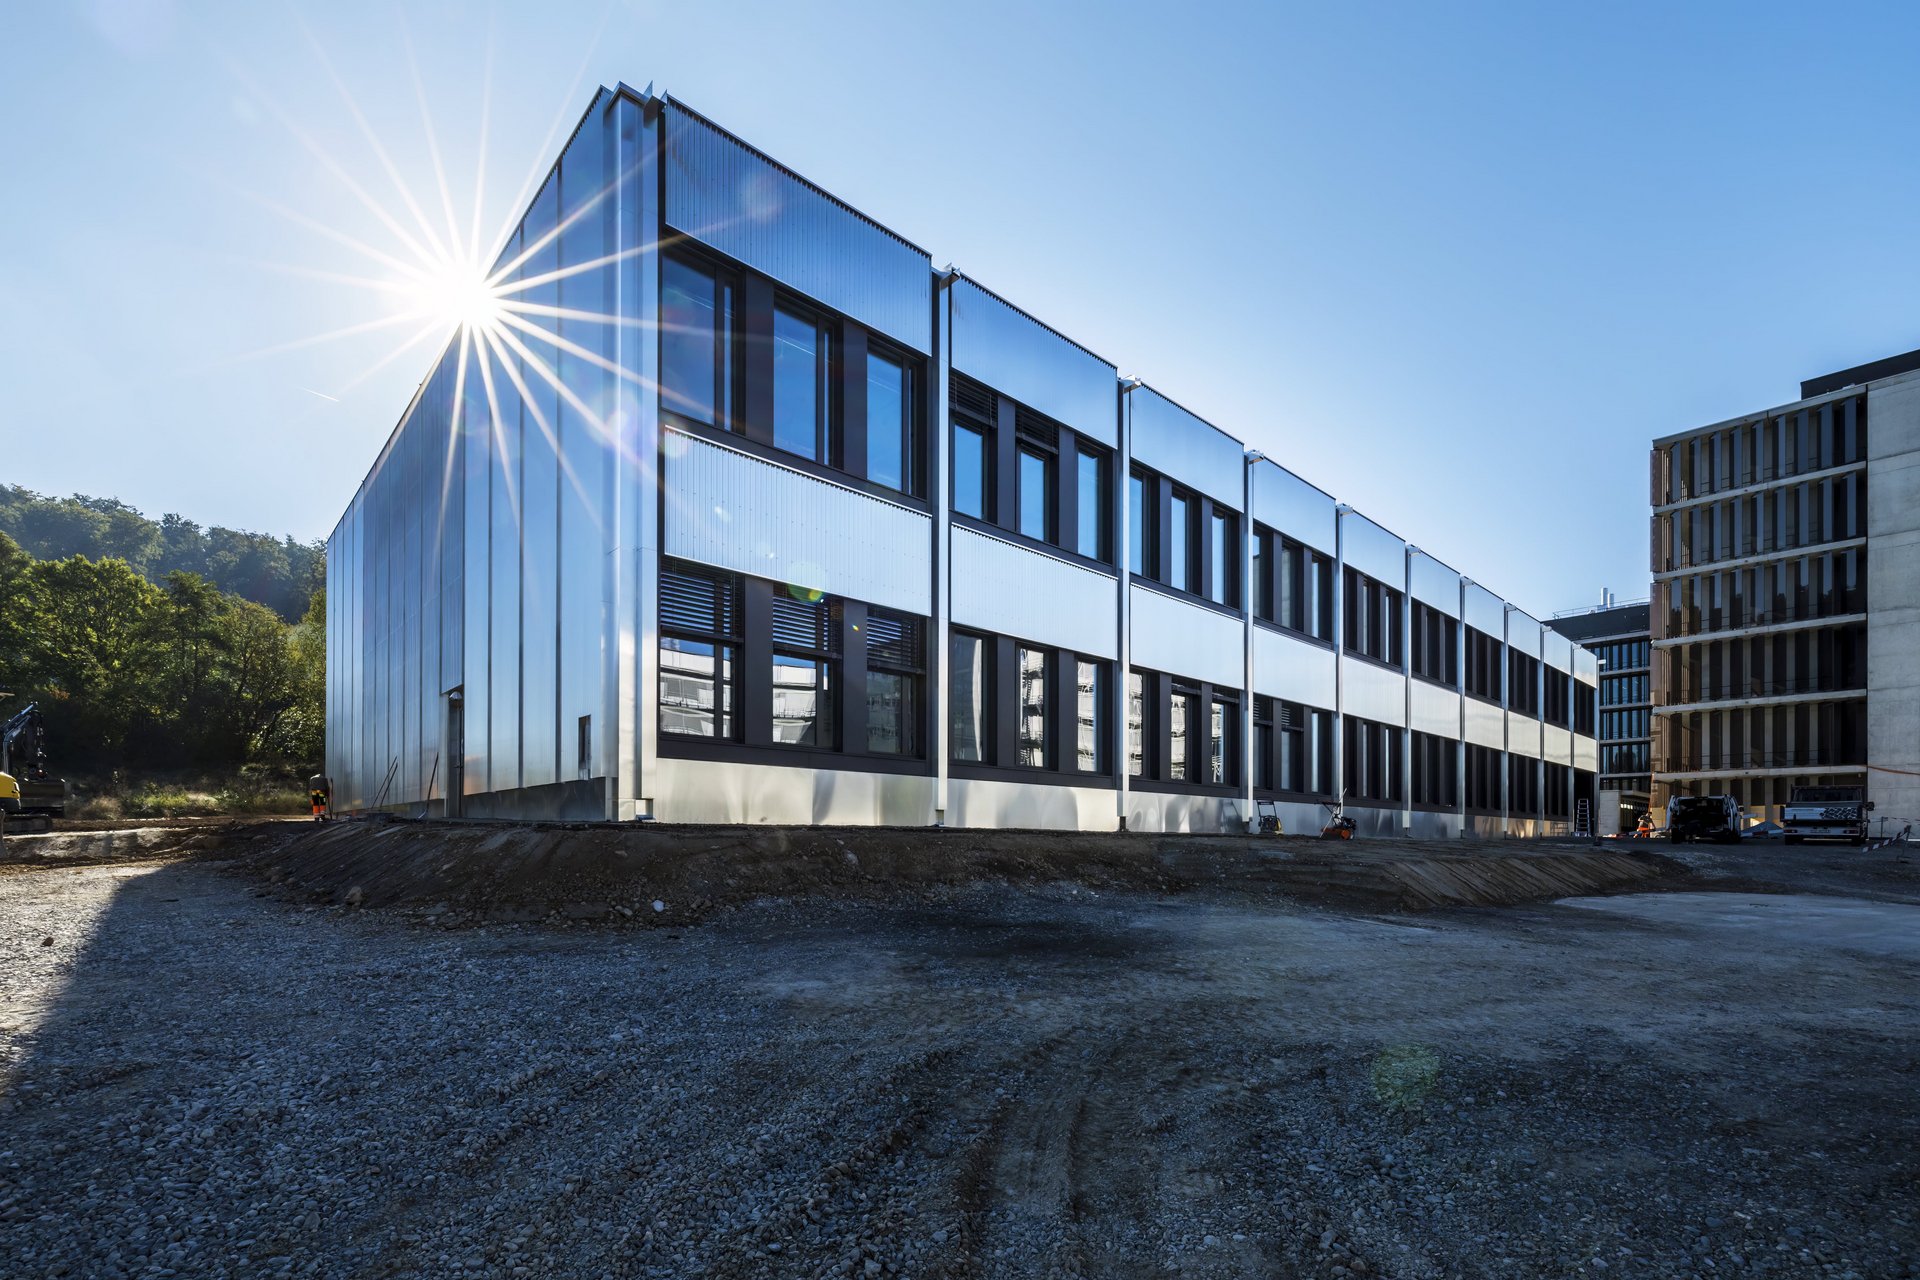 Neu erstelltes Provisorium des Functional Genomics Center Zurich (FGCZ), eine gemeinsame Forschungs- und Ausbildungsplattform der Universität Zürich (UZH) und der ETH Zürich. Das neue Gebäude bietet viel Platz für Labormitarbeitende und wissenschaftliche Geräte. Das Gebäude ist auf eine Nutzungsdauer von 15 Jahren ausgelegt und hat besondere Ansprüche an die Nachhaltigkeit.